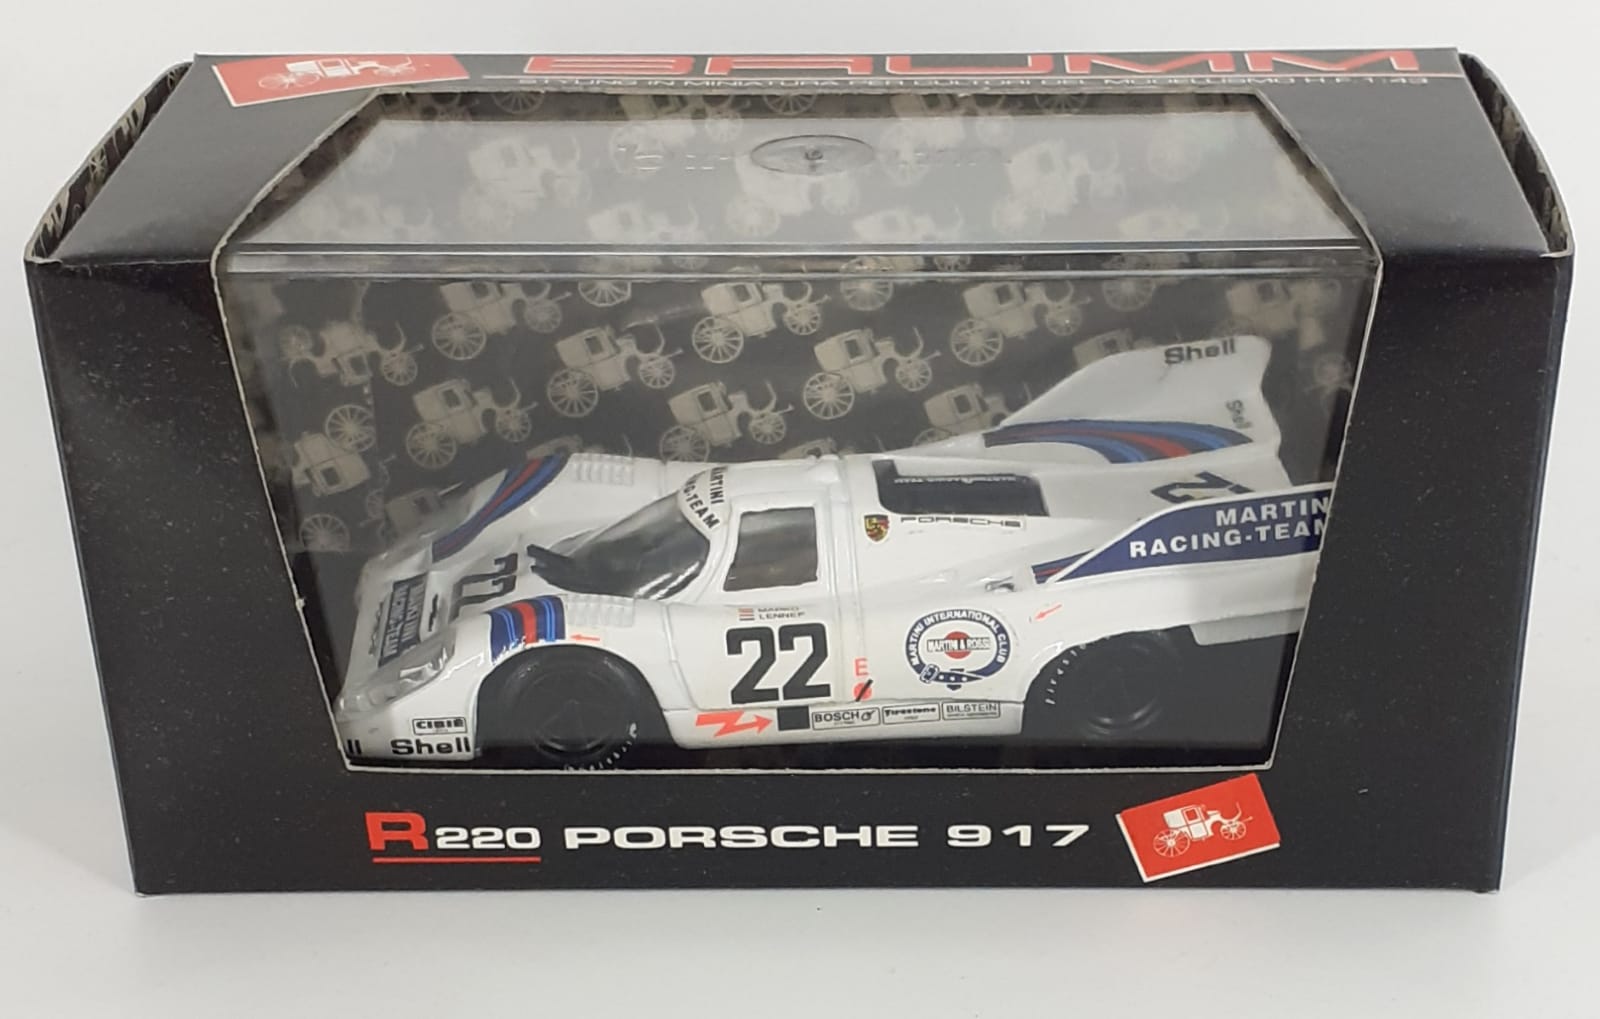 Porsche 917 Martini racing team Le Mans 1971